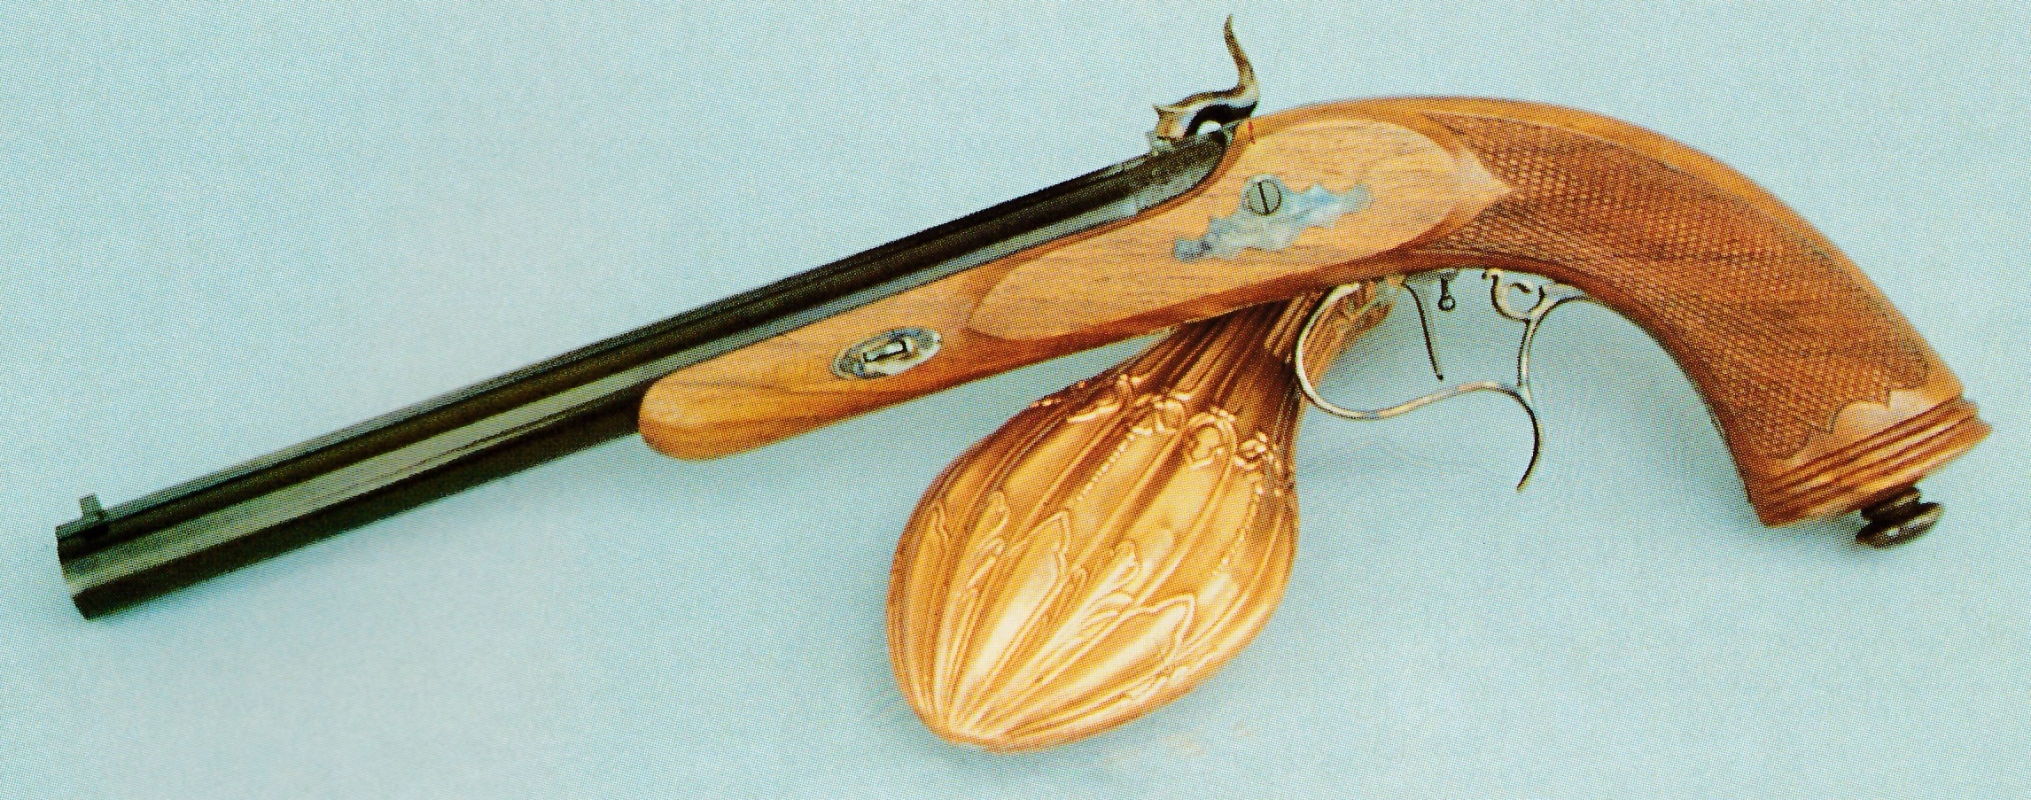 Le pistolet Rochatte modèle 1830, produit par l'italien Paolo Bondini, constitue une réplique particulièrement soignée d'une arme de tir fabriquée en France vers le milieu du XIXème siècle.